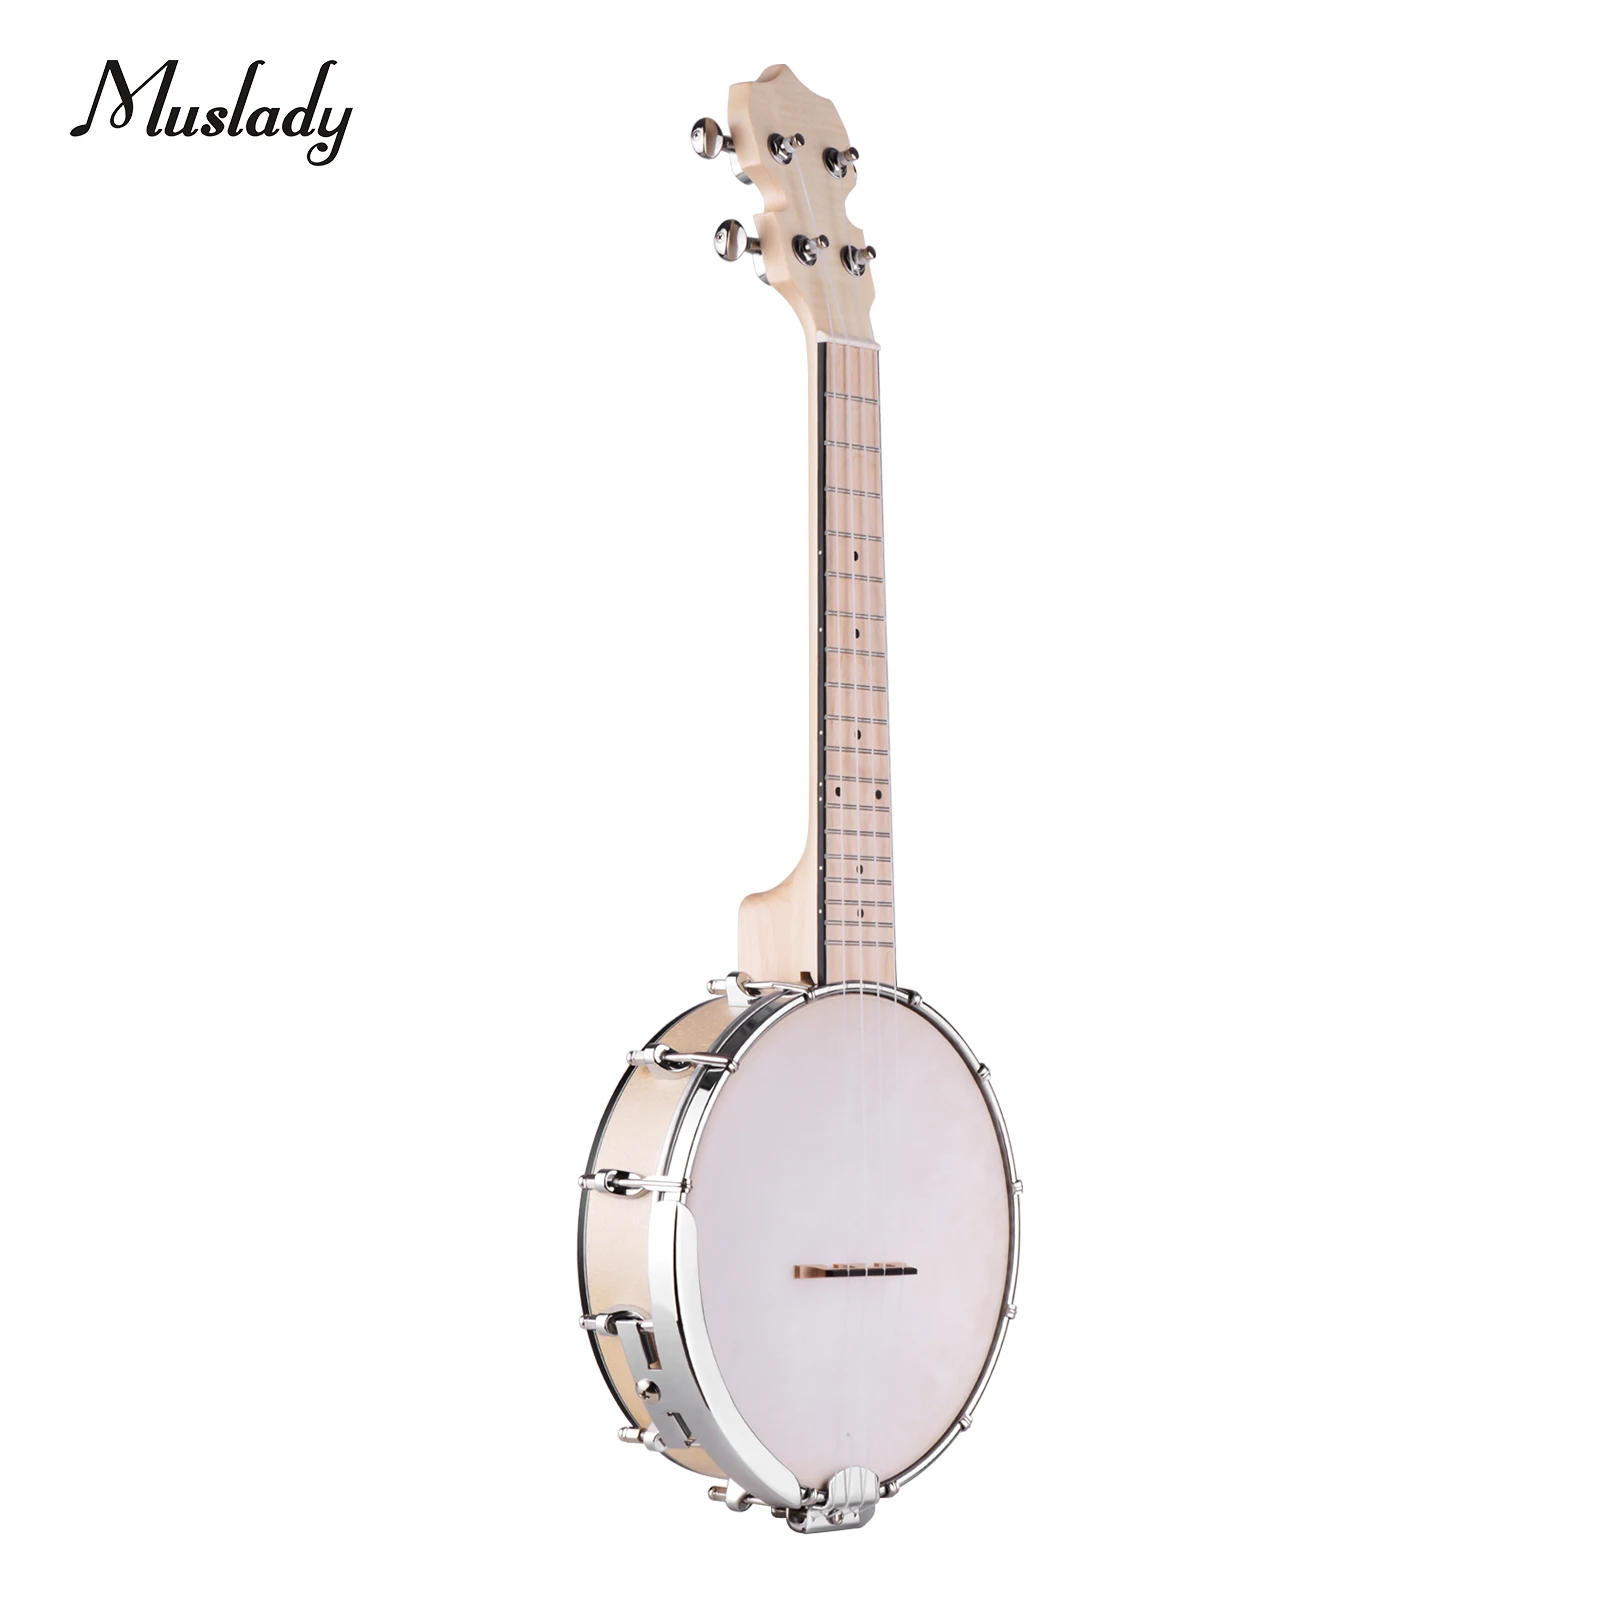 

Muslady Concert 23 Inch Open-back Banjo Uke 4 String Banjolele Maple Body Okoume Neck with Tuning Wrench Bridge Positioning